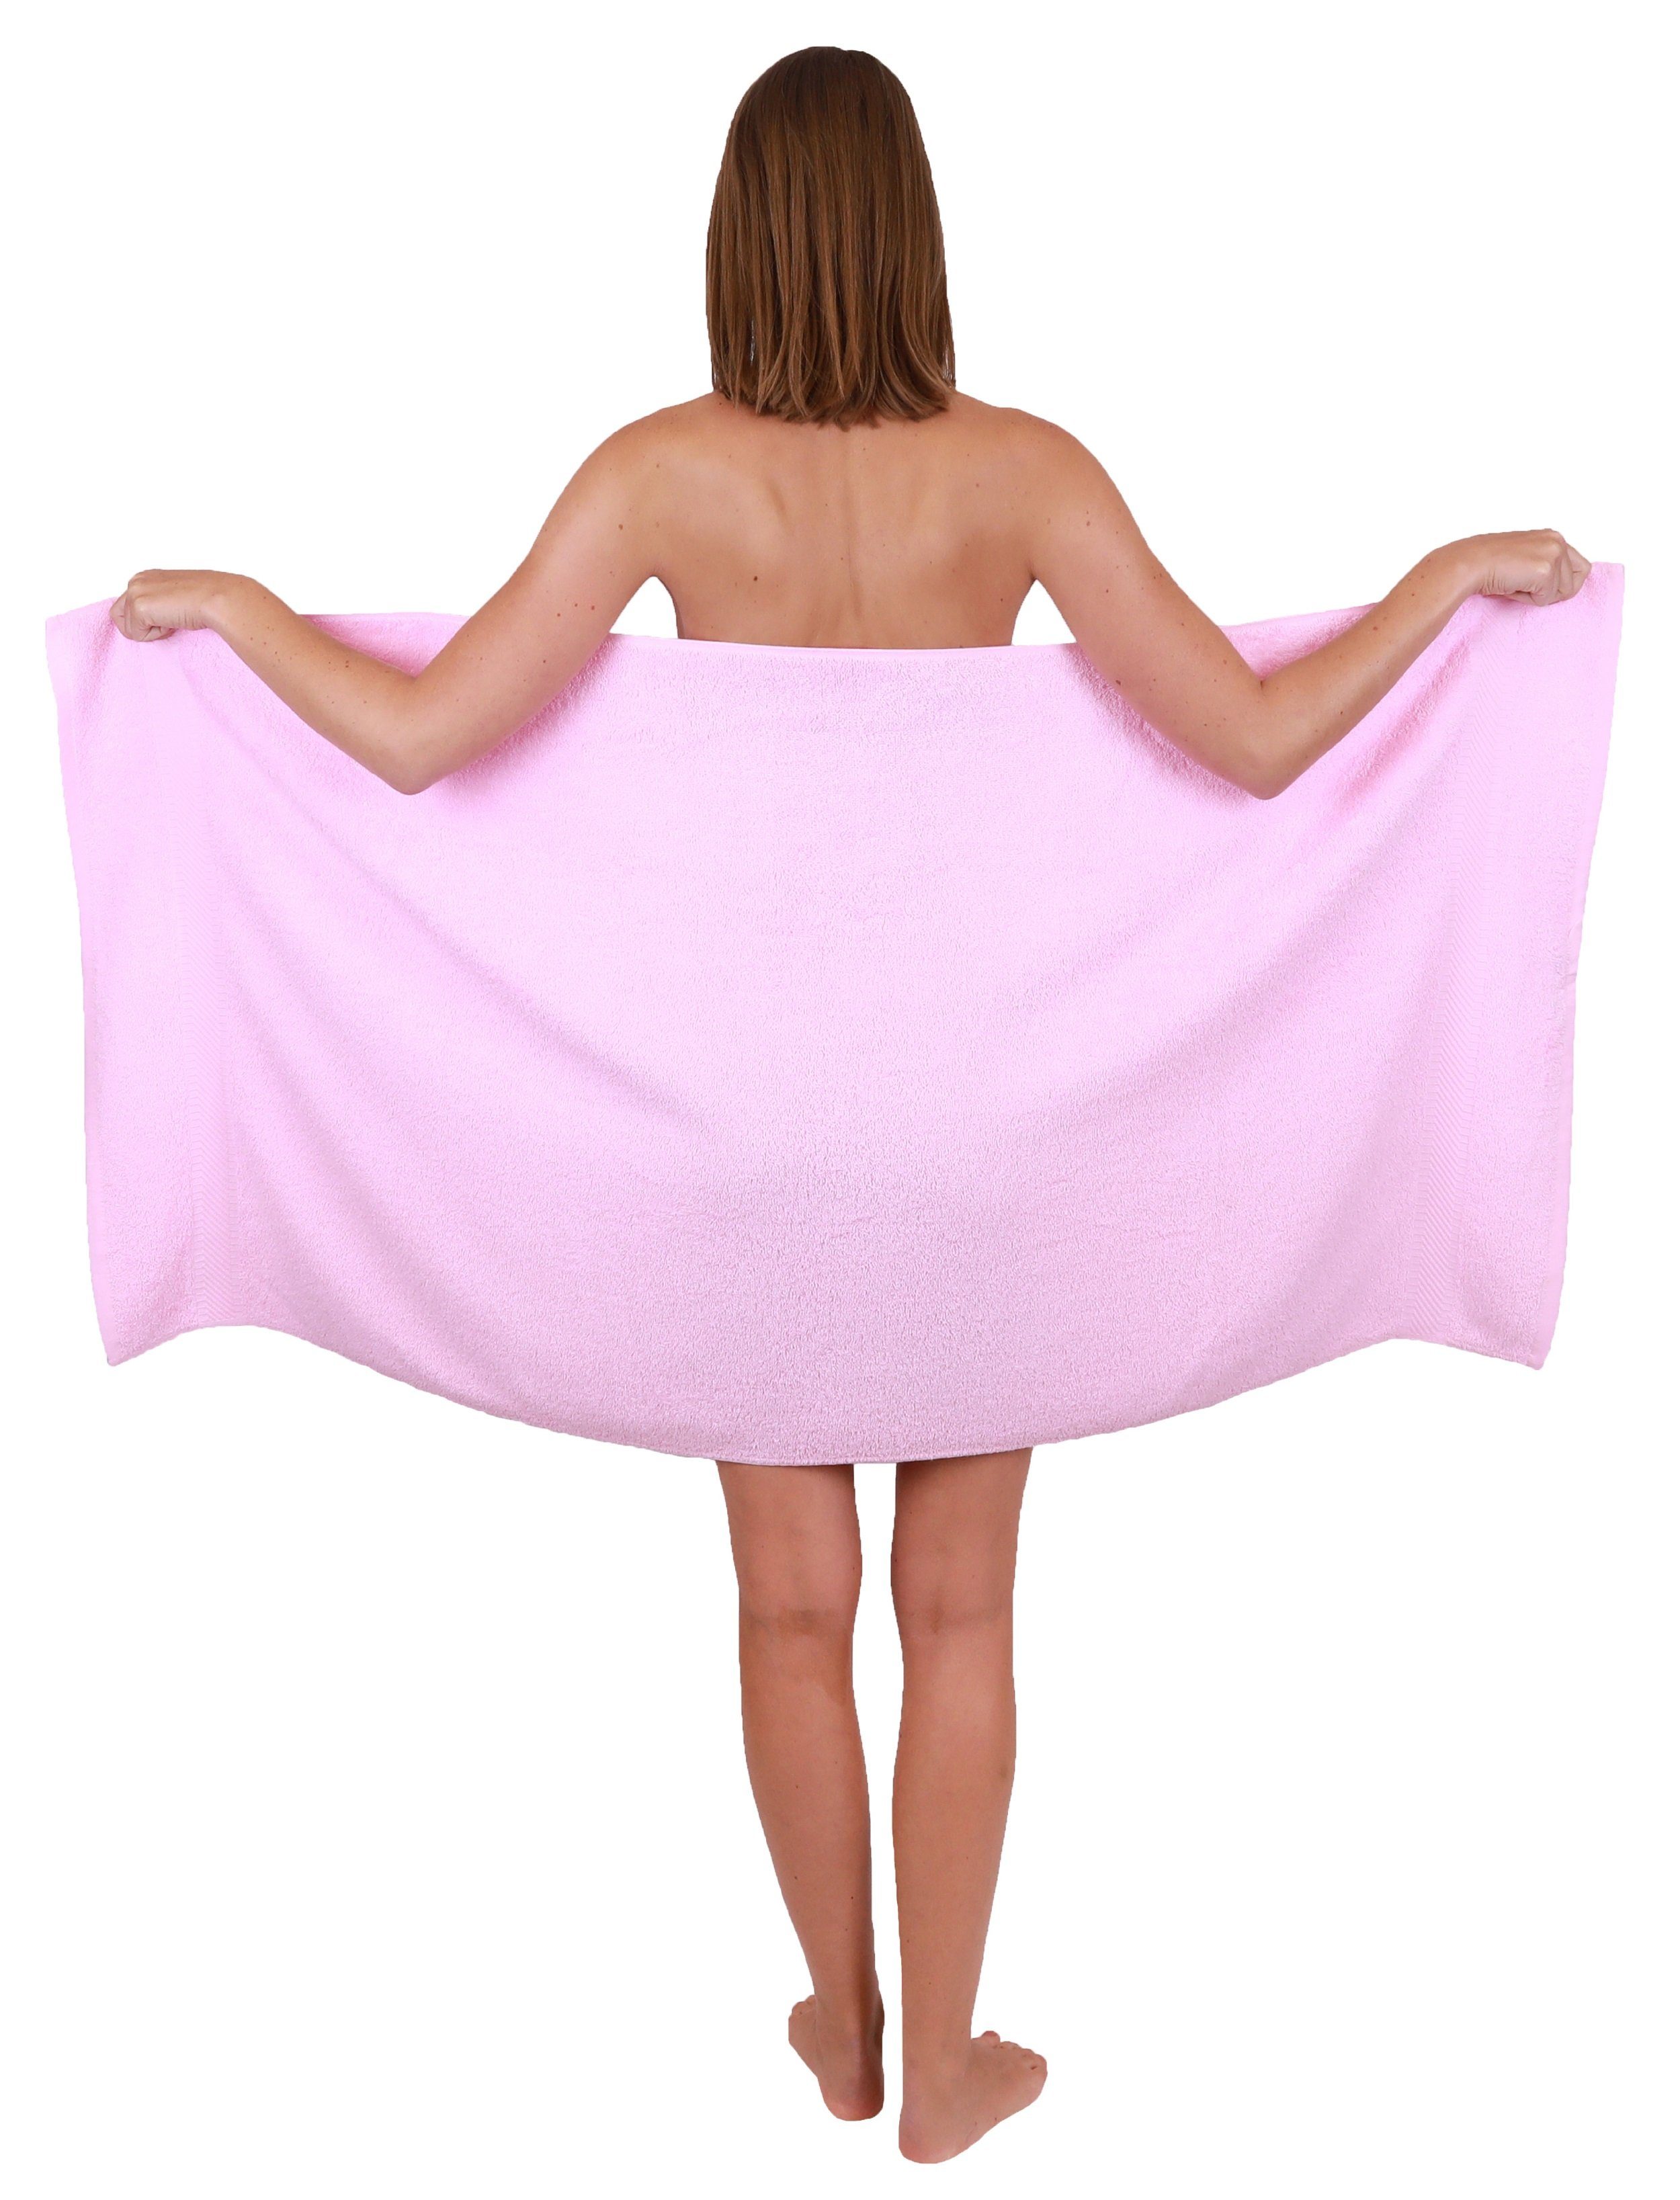 Betz Handtuch Set 8-tlg. Handtuch-Set weiß Palermo und rosé, Baumwolle 100% Farbe